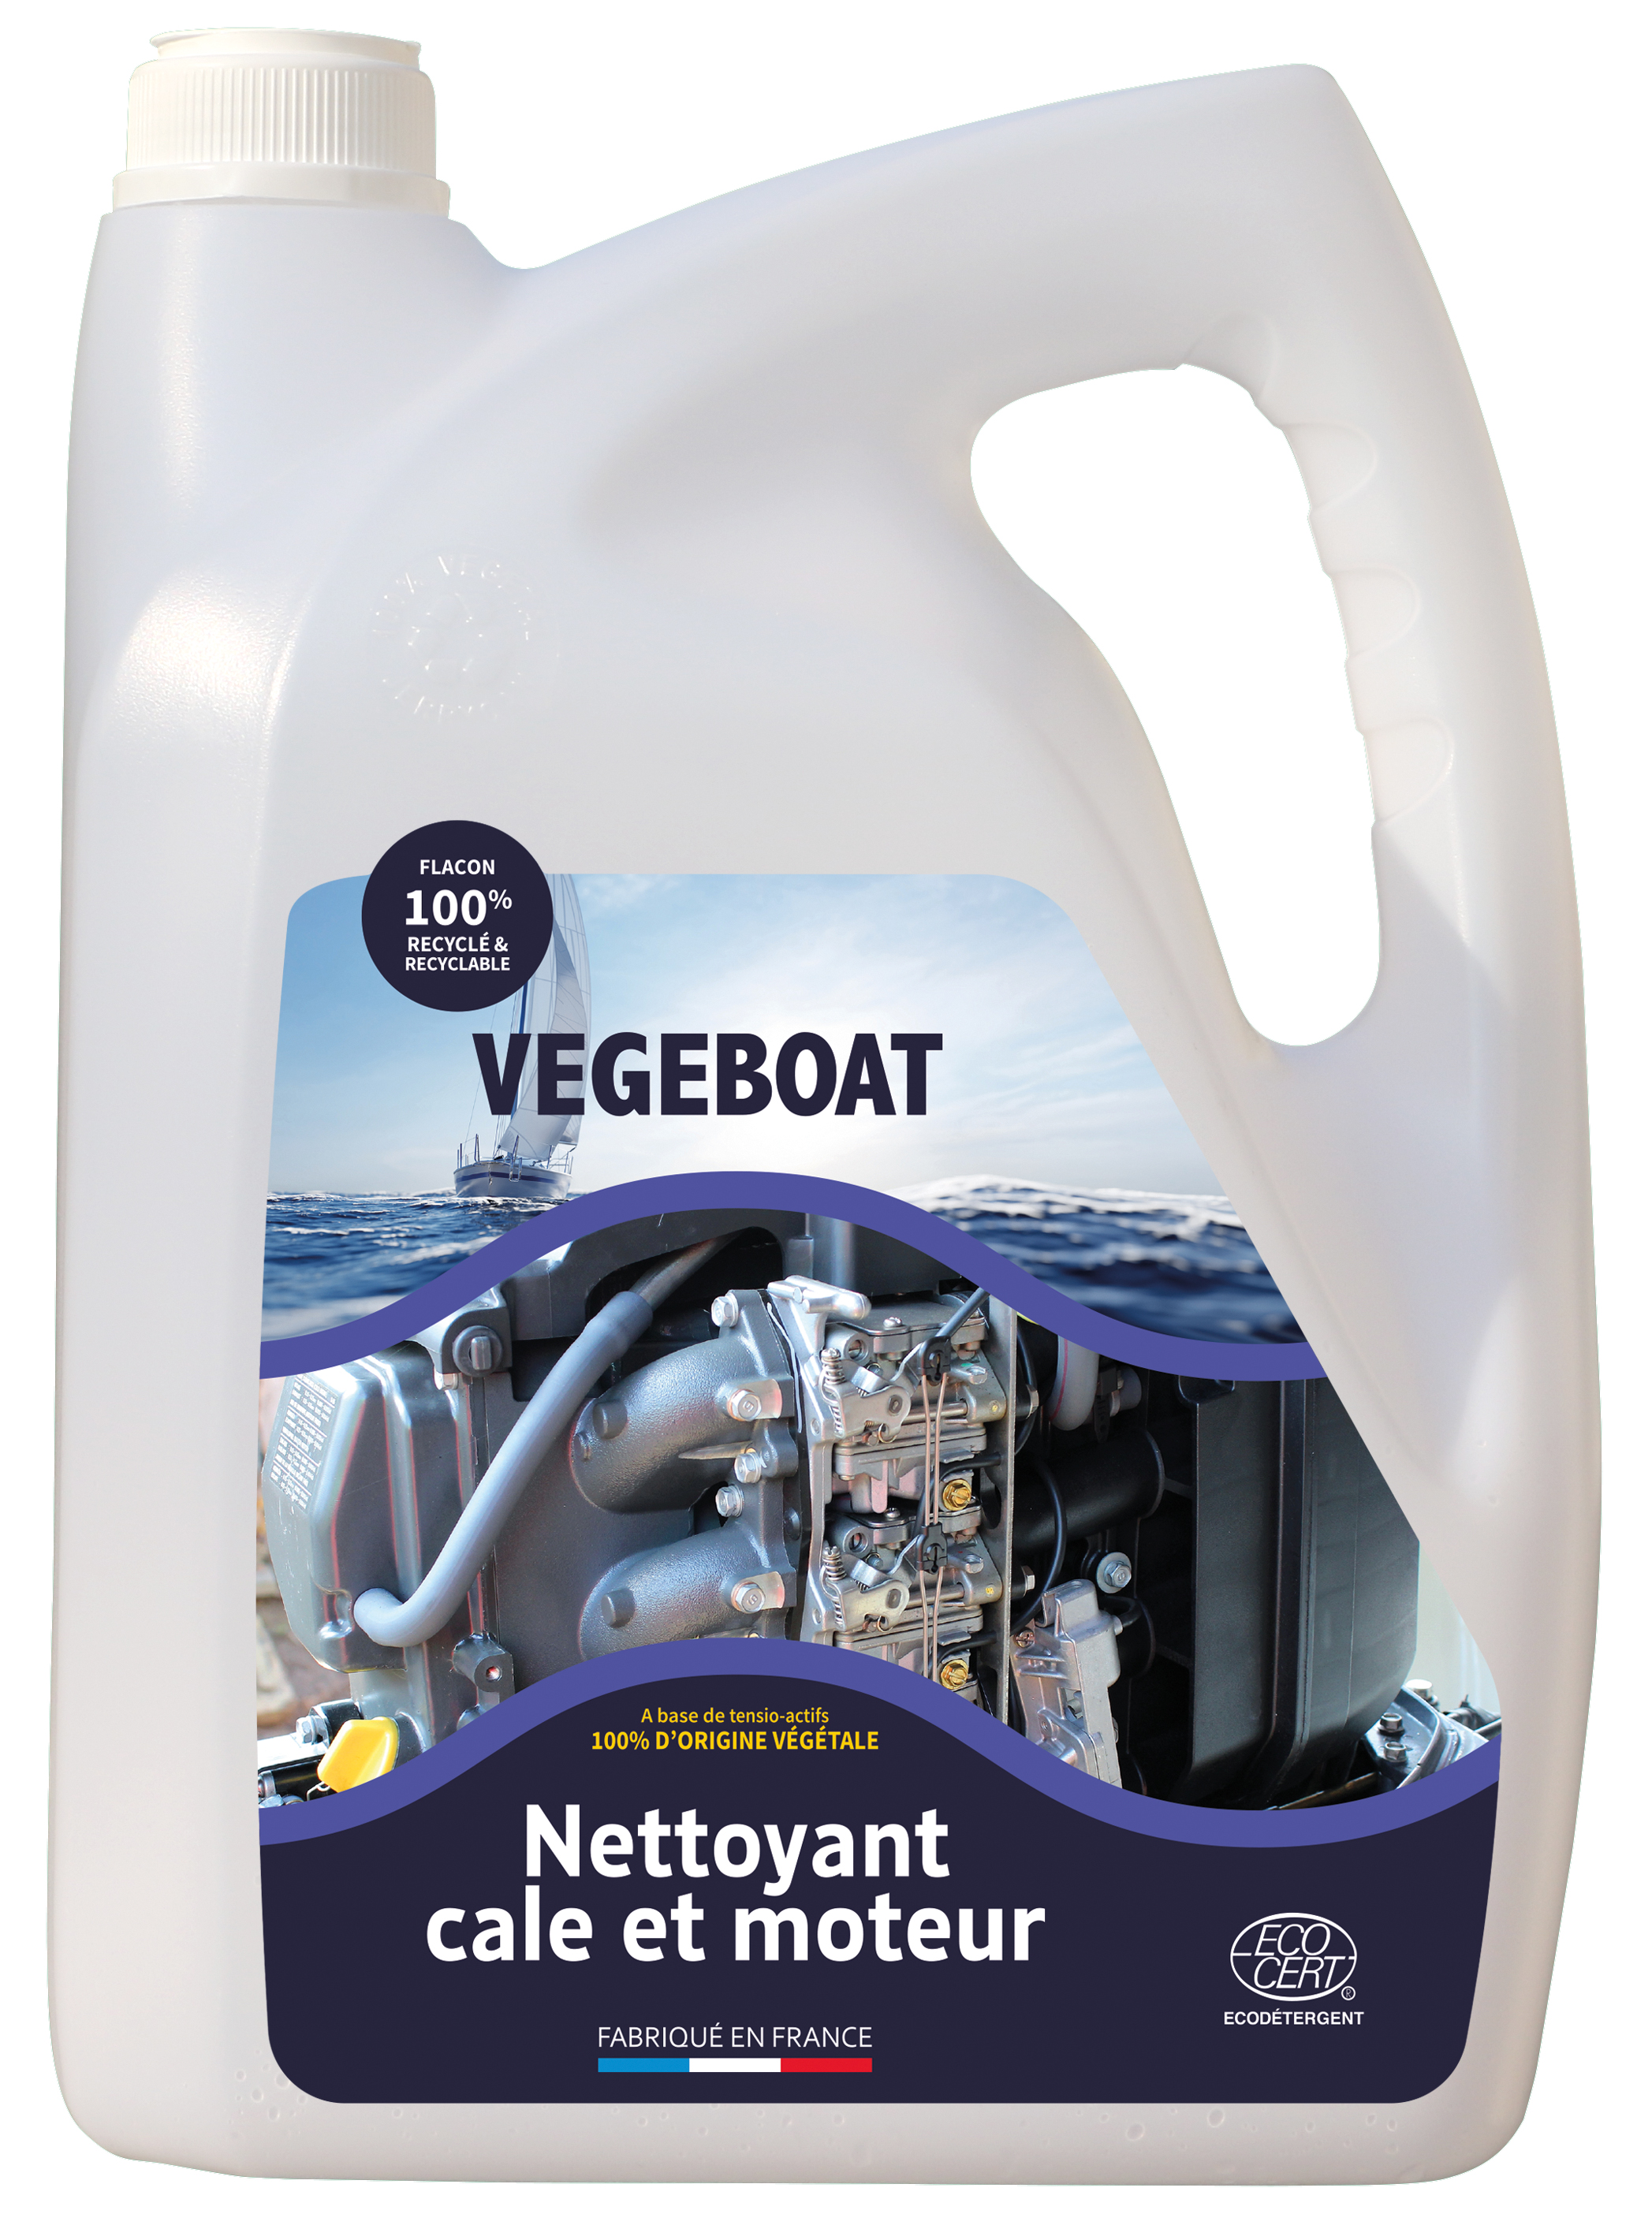 Nettoyant cale et moteur concentré Végéboat - détergents écologiques et bio d’origine végétale et naturelle